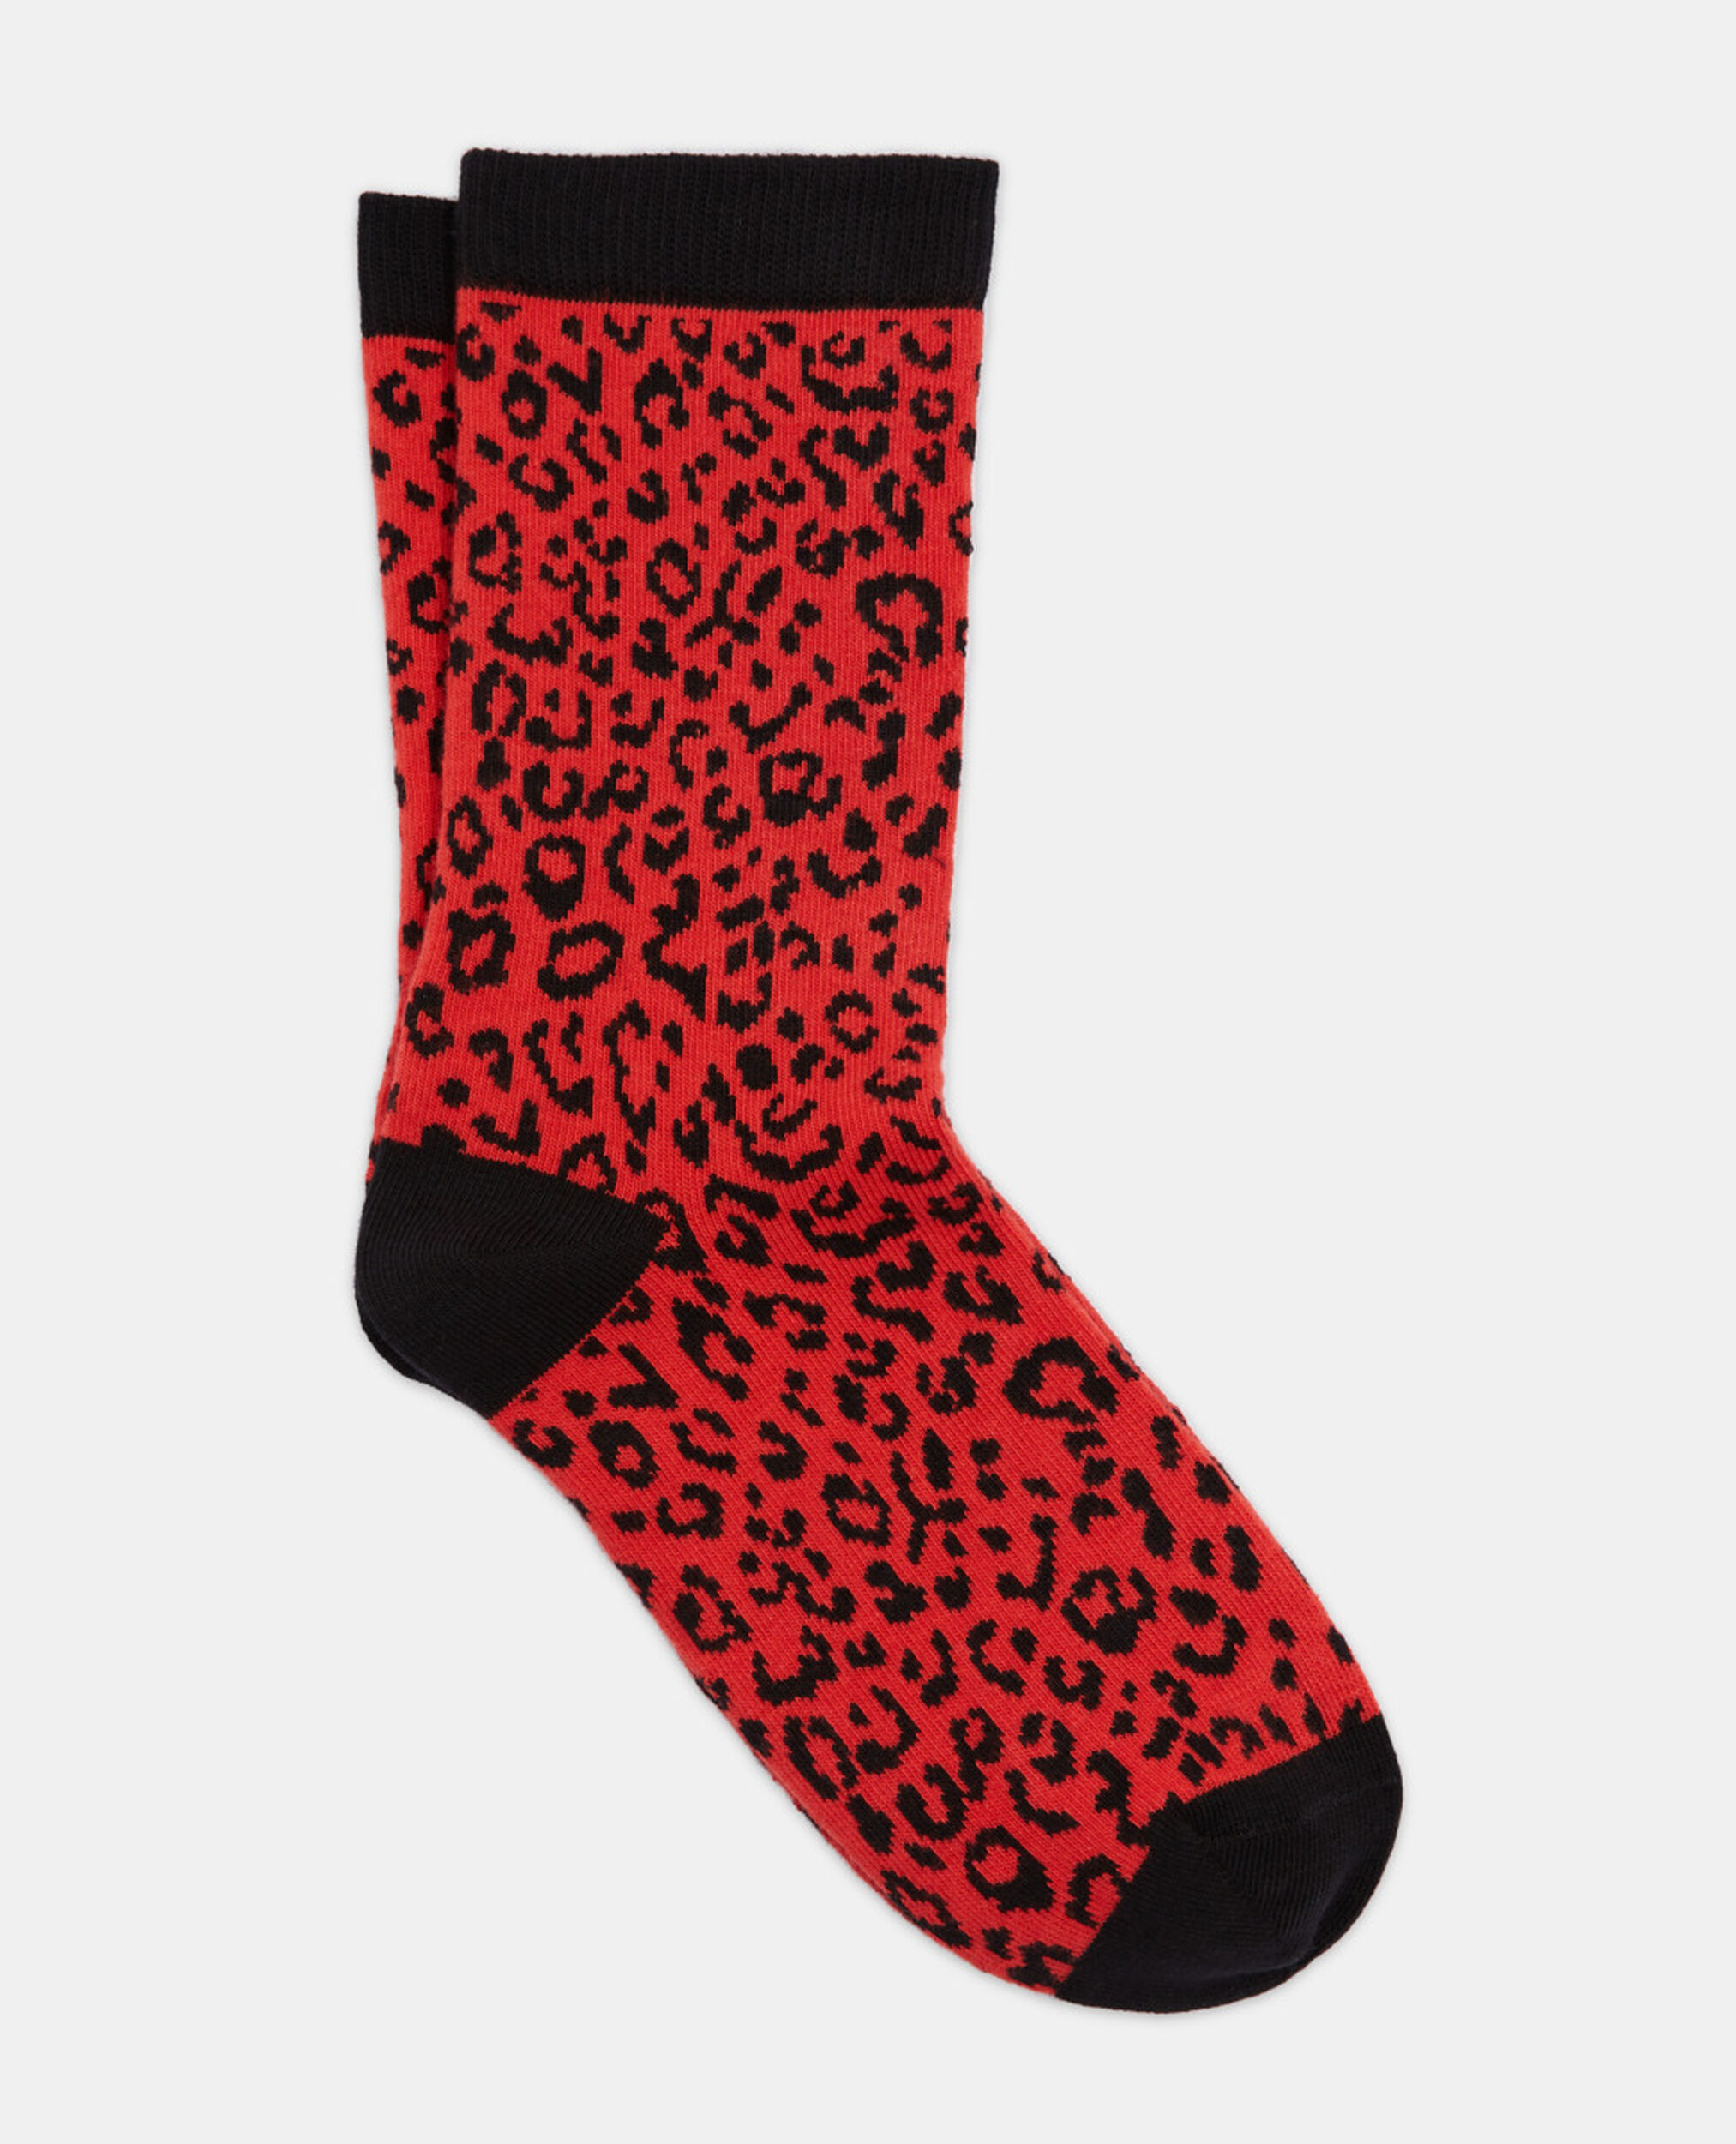 Red leopard print socks, RED / BLACK, hi-res image number null